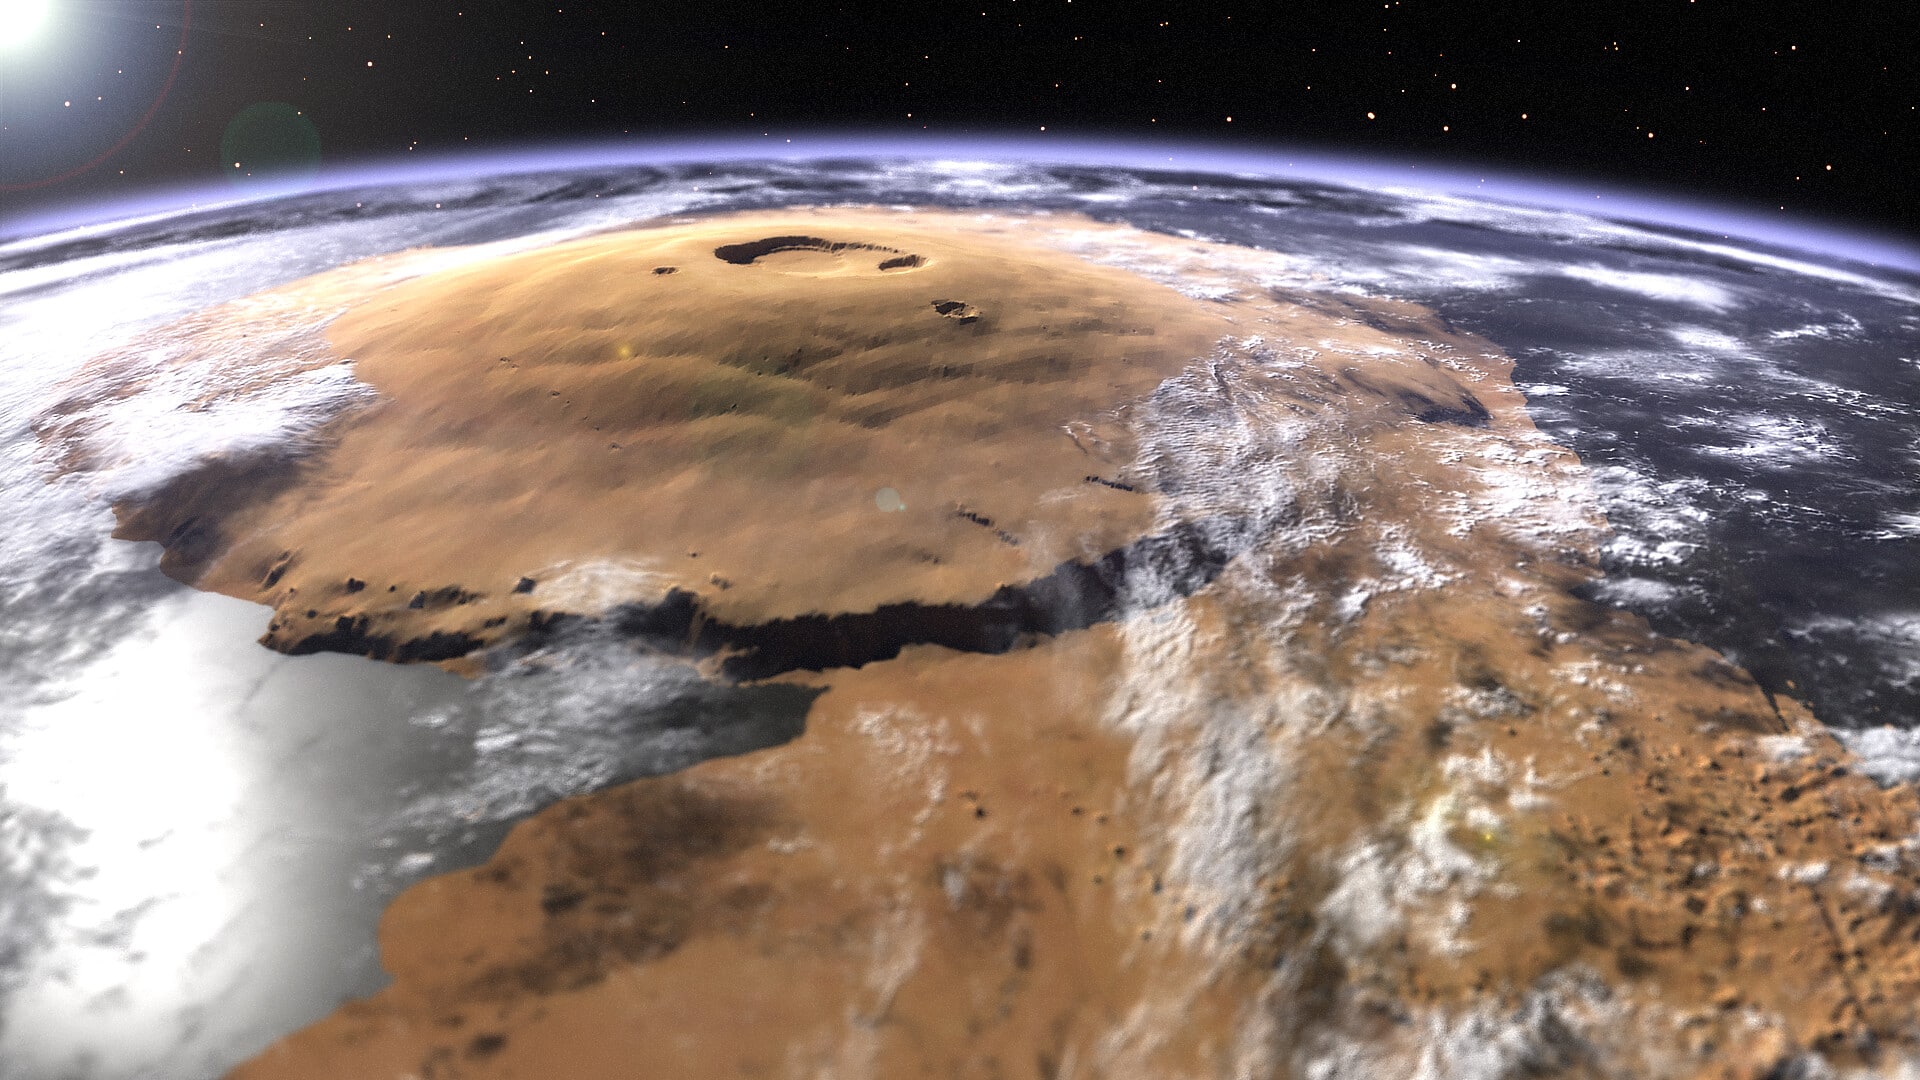 Марс Планета вулкан Олимп